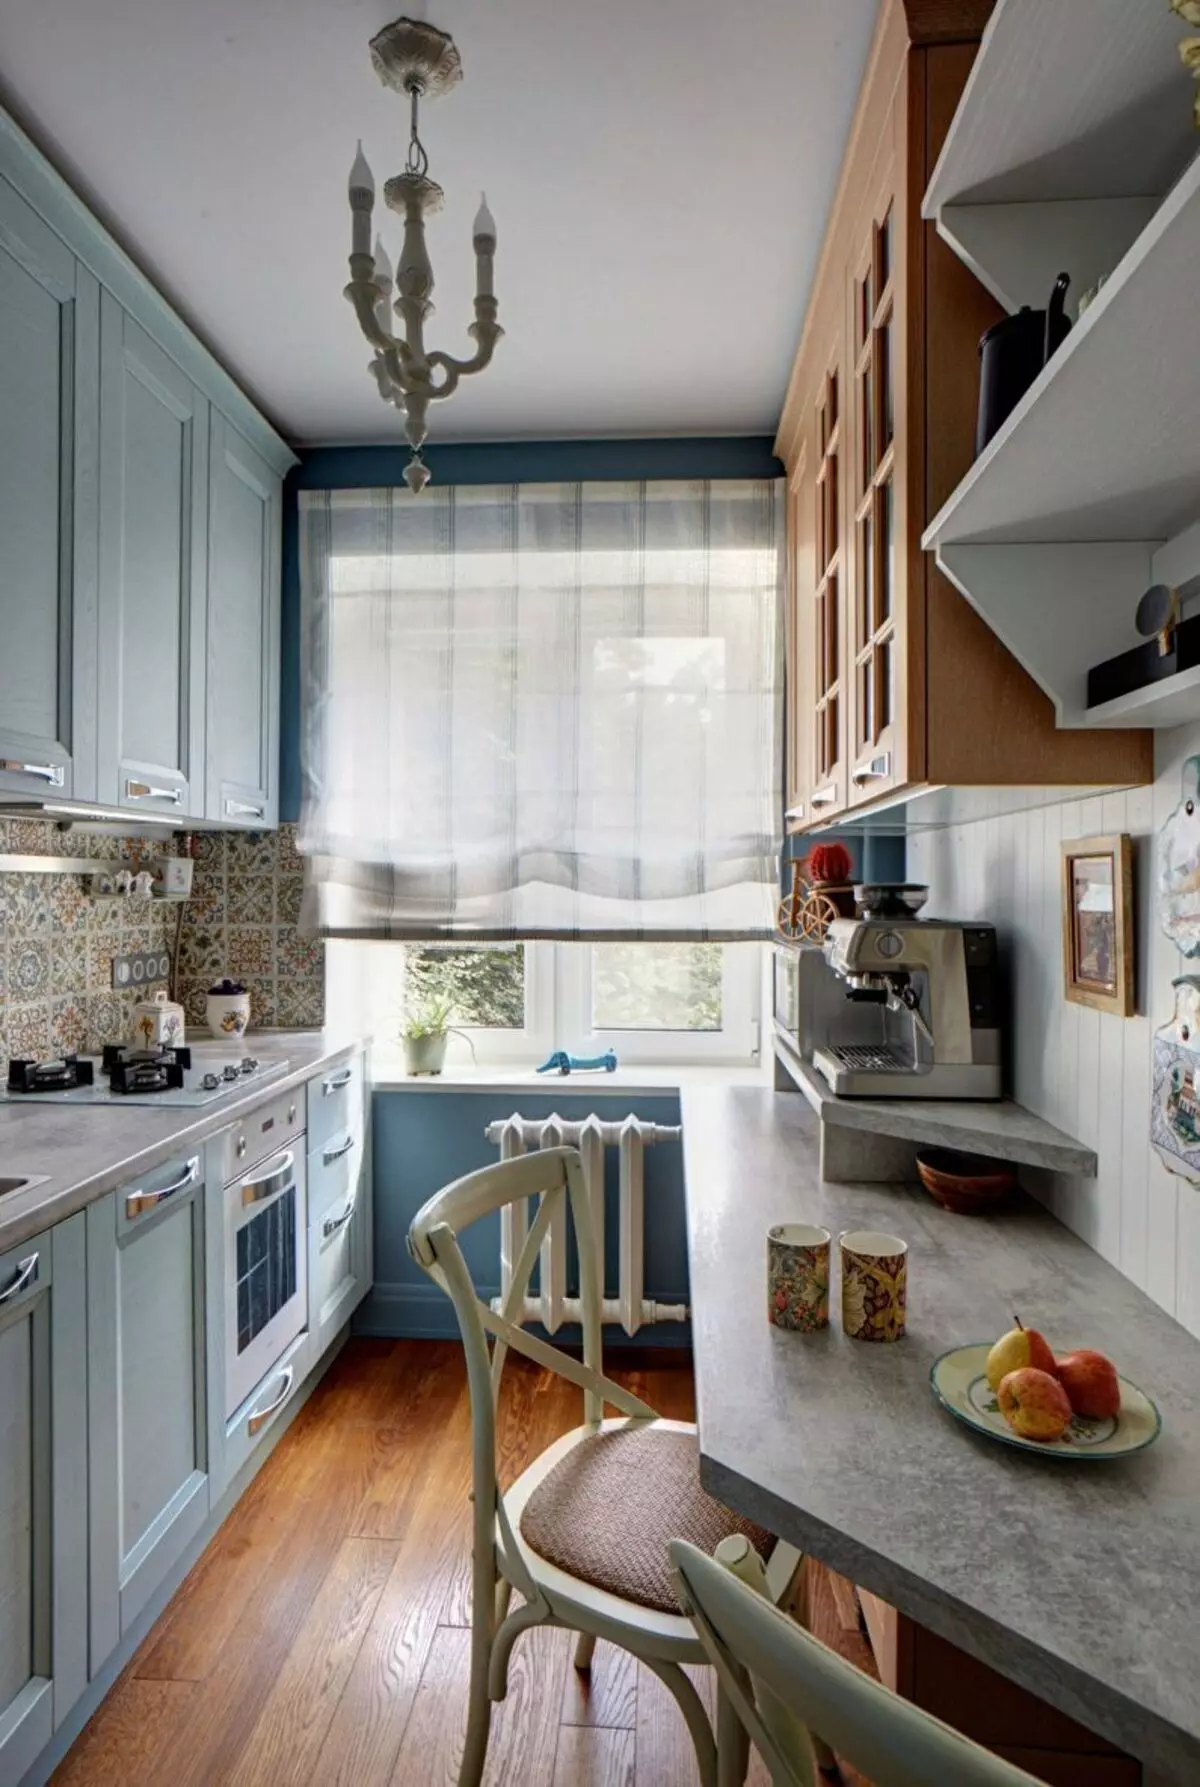 So erstellen Sie ein Kücheninnenraum in einem modernen Stil für eine große Familie